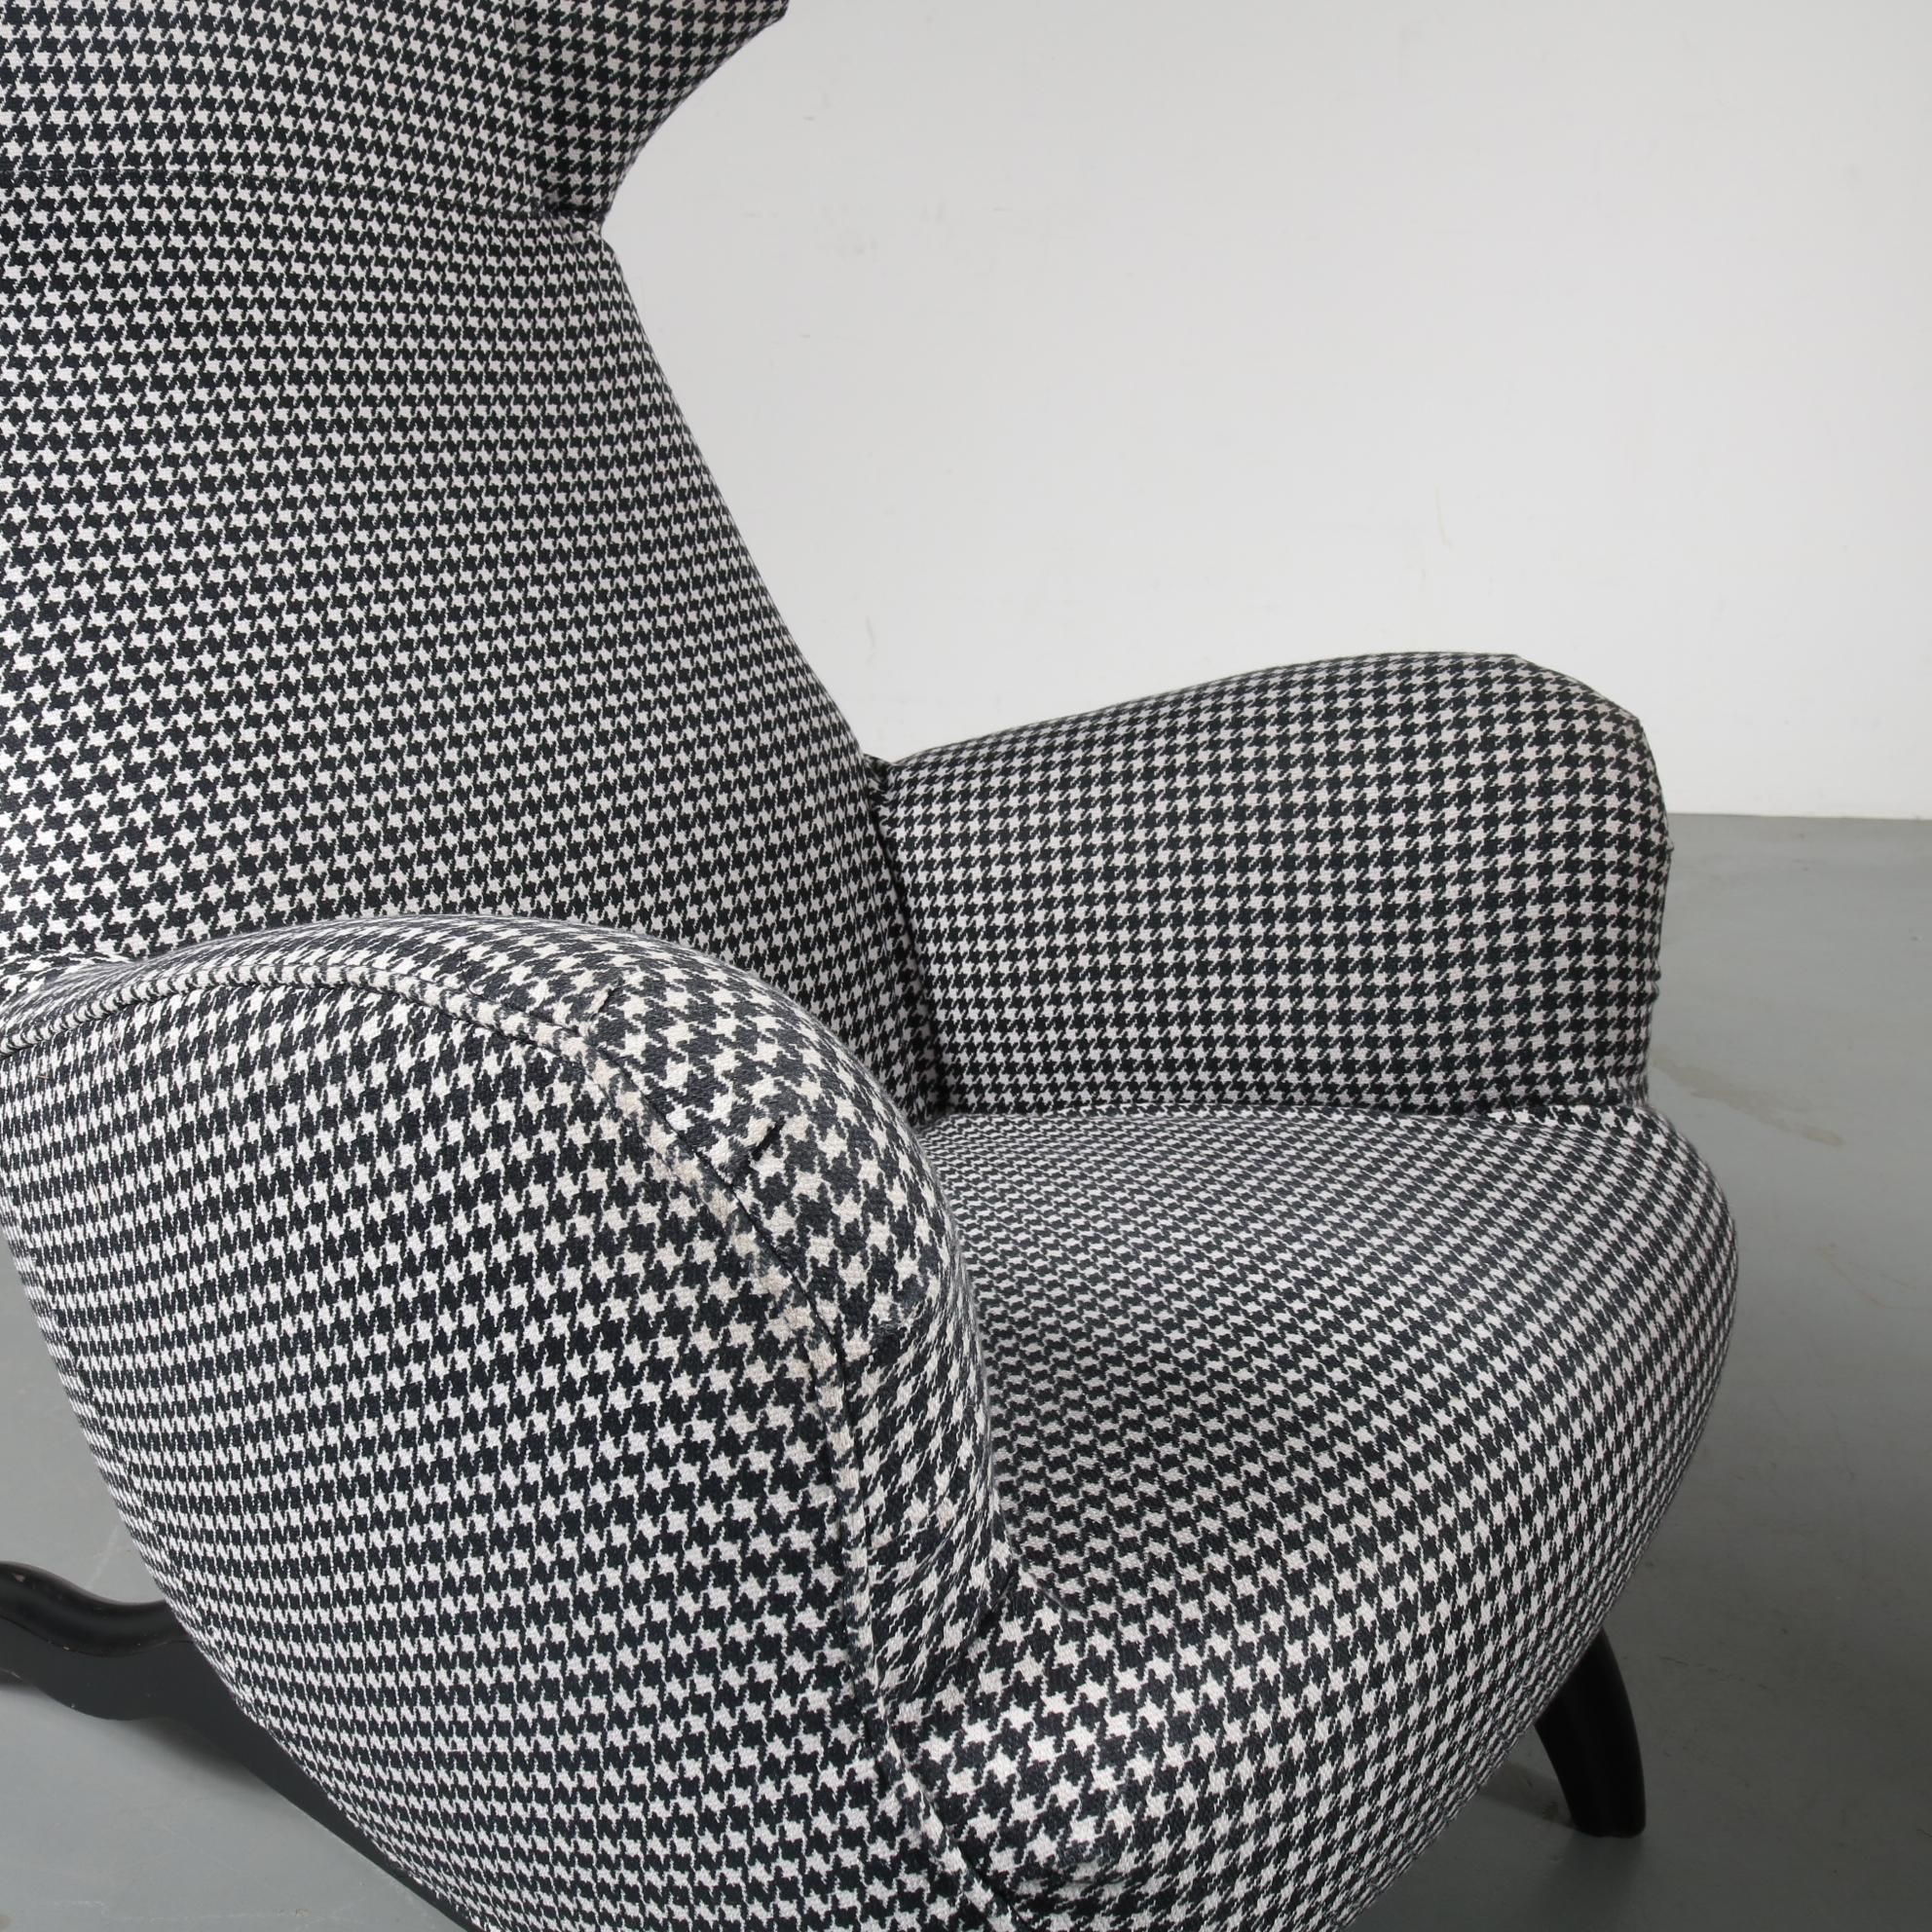 Carlo Mollino “Ardea” Chair for Zanotta, Italy, 1980 1